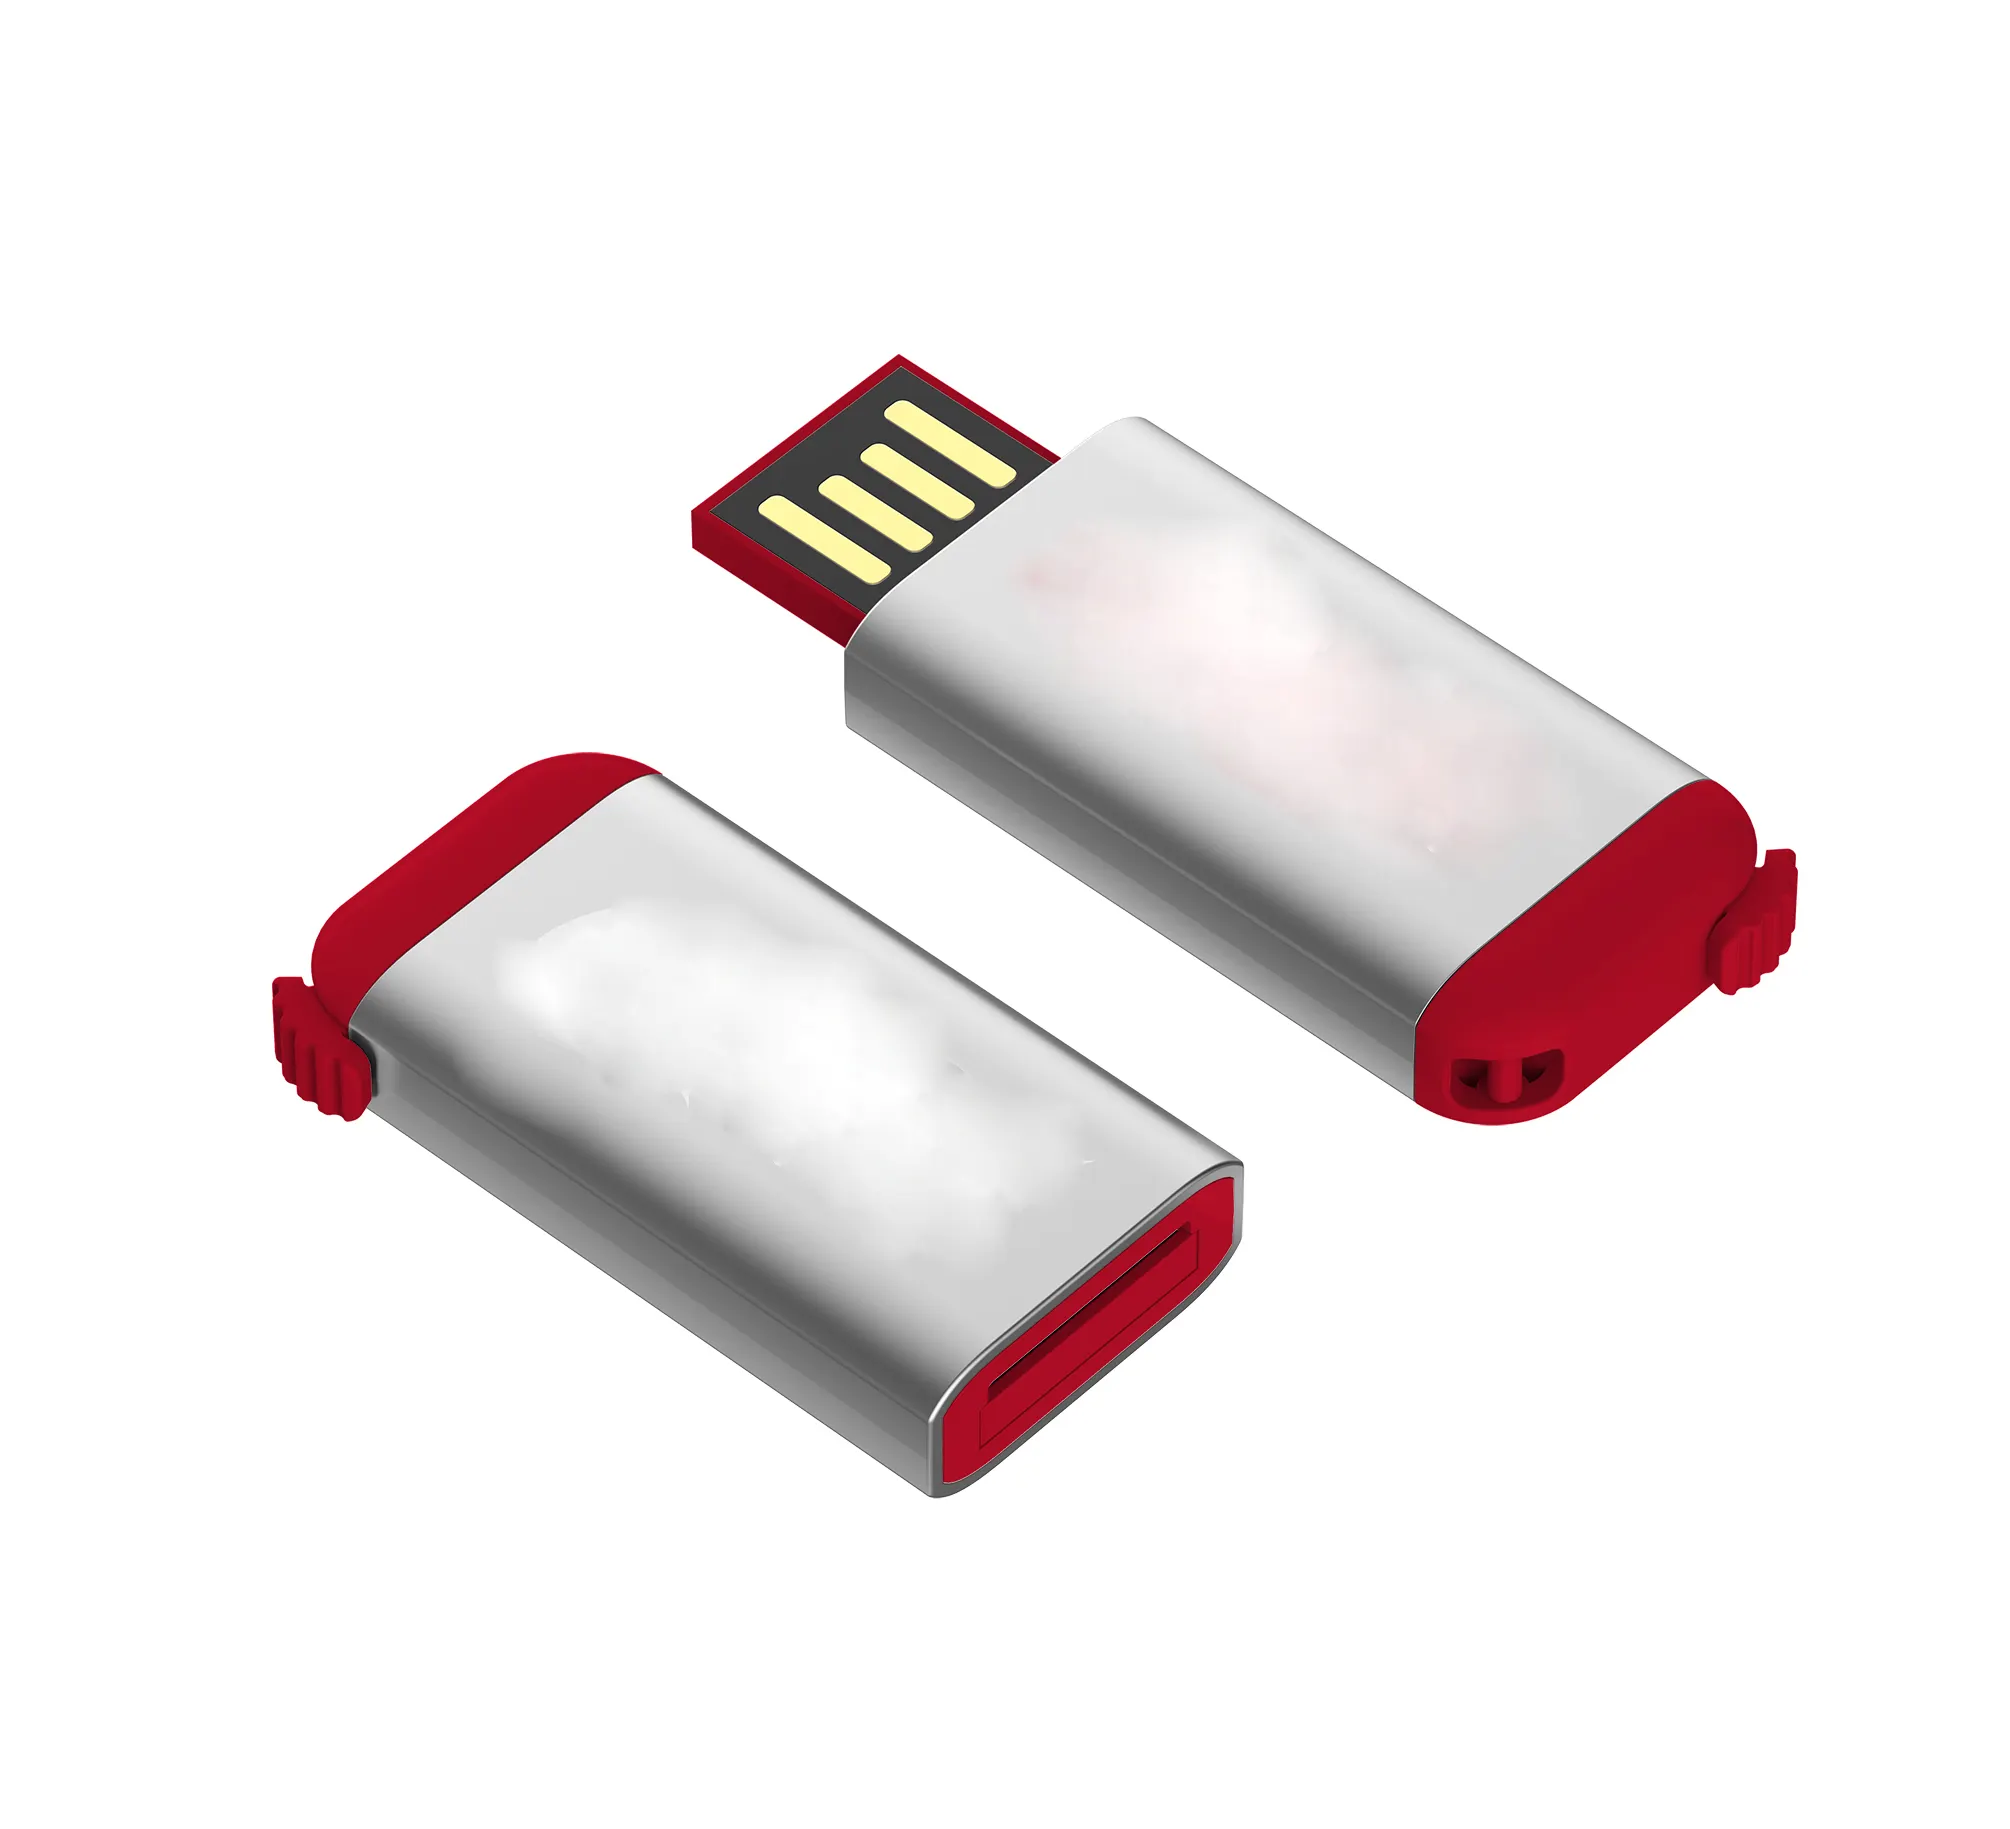 Clé USB unique de qualité garantie d'usine de 14 ans Offre Spéciale nouvelle clé flash USB